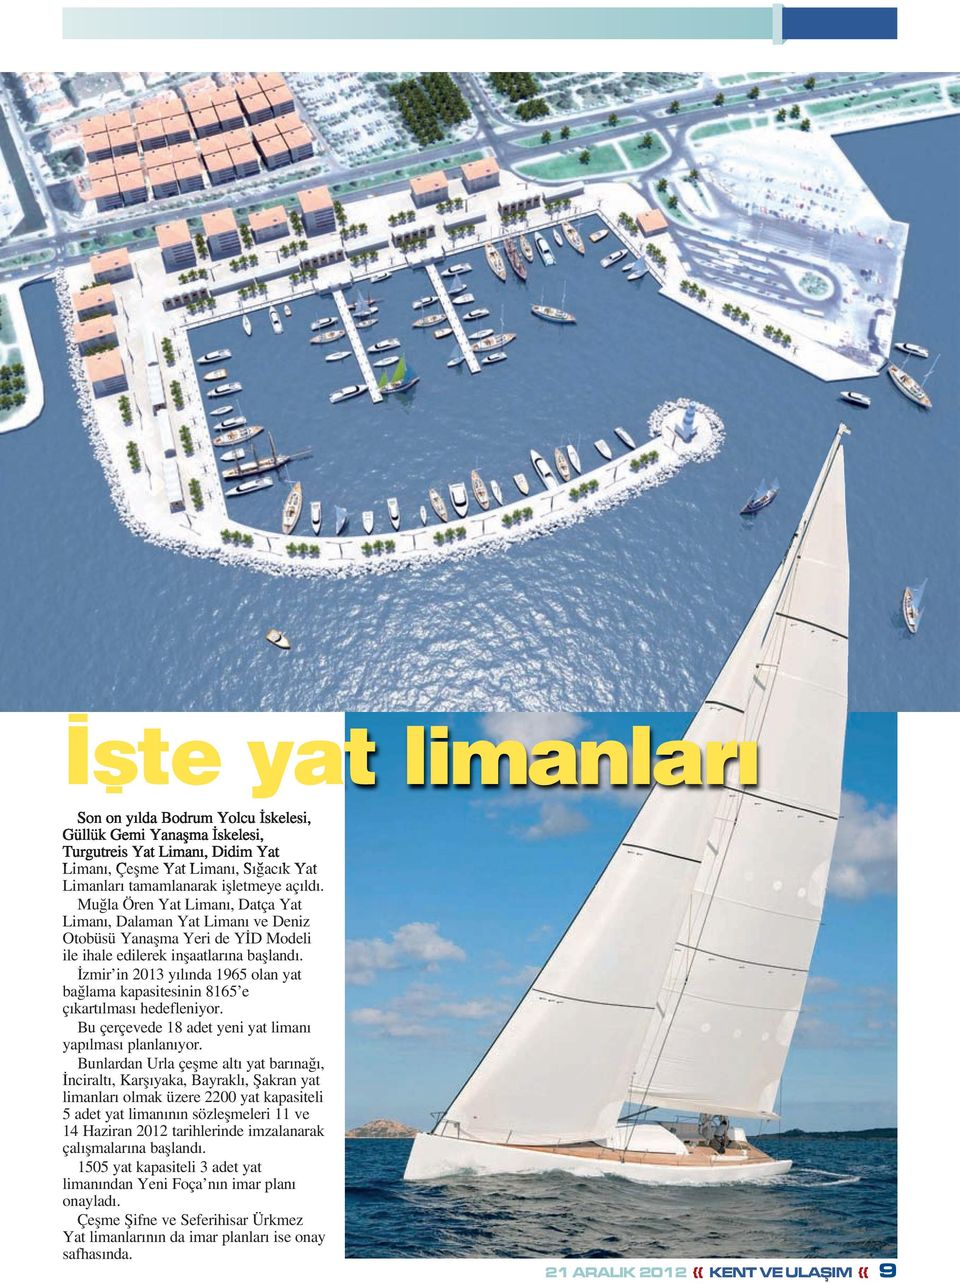 İzmir in 2013 yılında 1965 olan yat bağlama kapasitesinin 8165 e çıkartılması hedefleniyor. Bu çerçevede 18 adet yeni yat limanı yapılması planlanıyor.